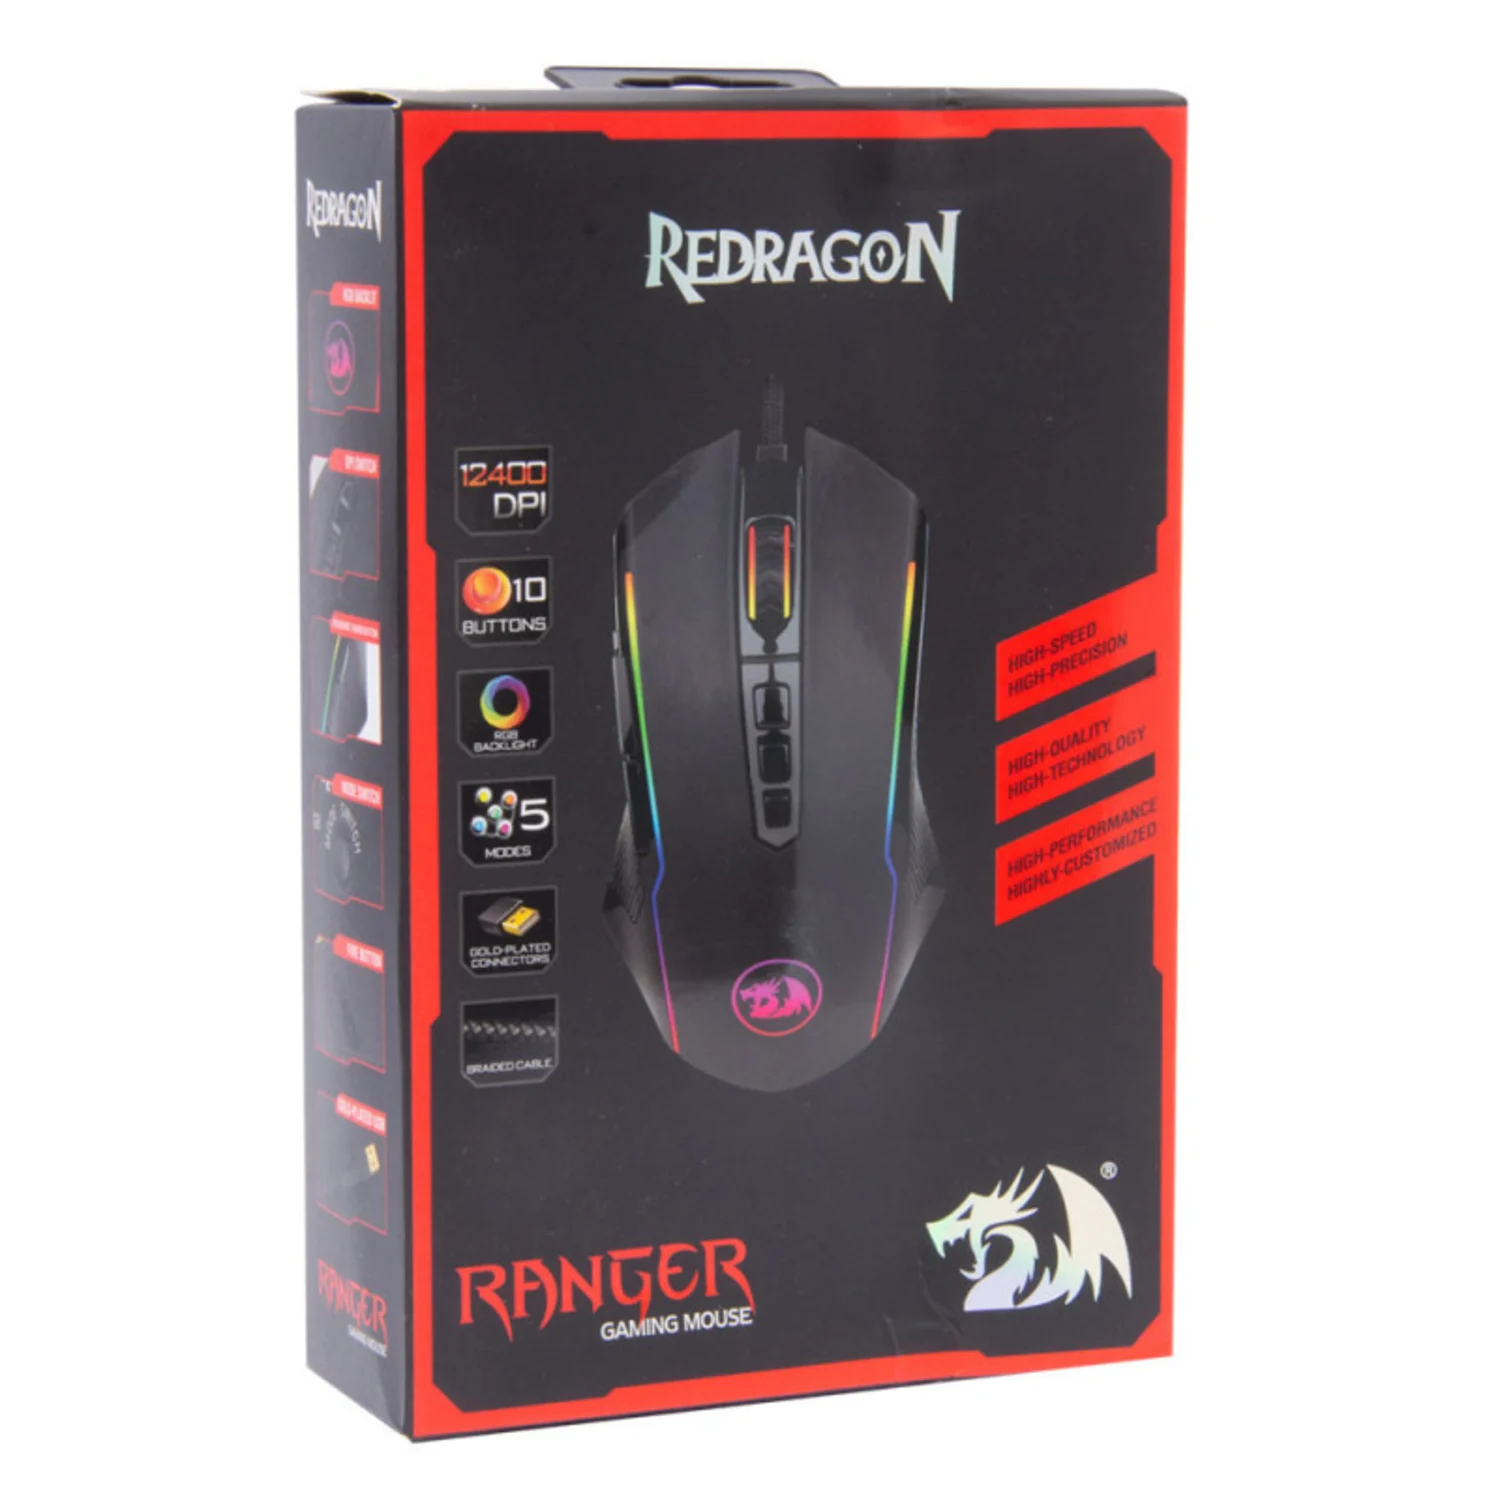 Mouse Gamer Redragon Ranger M910 RGB / 12400 DPI - Preto